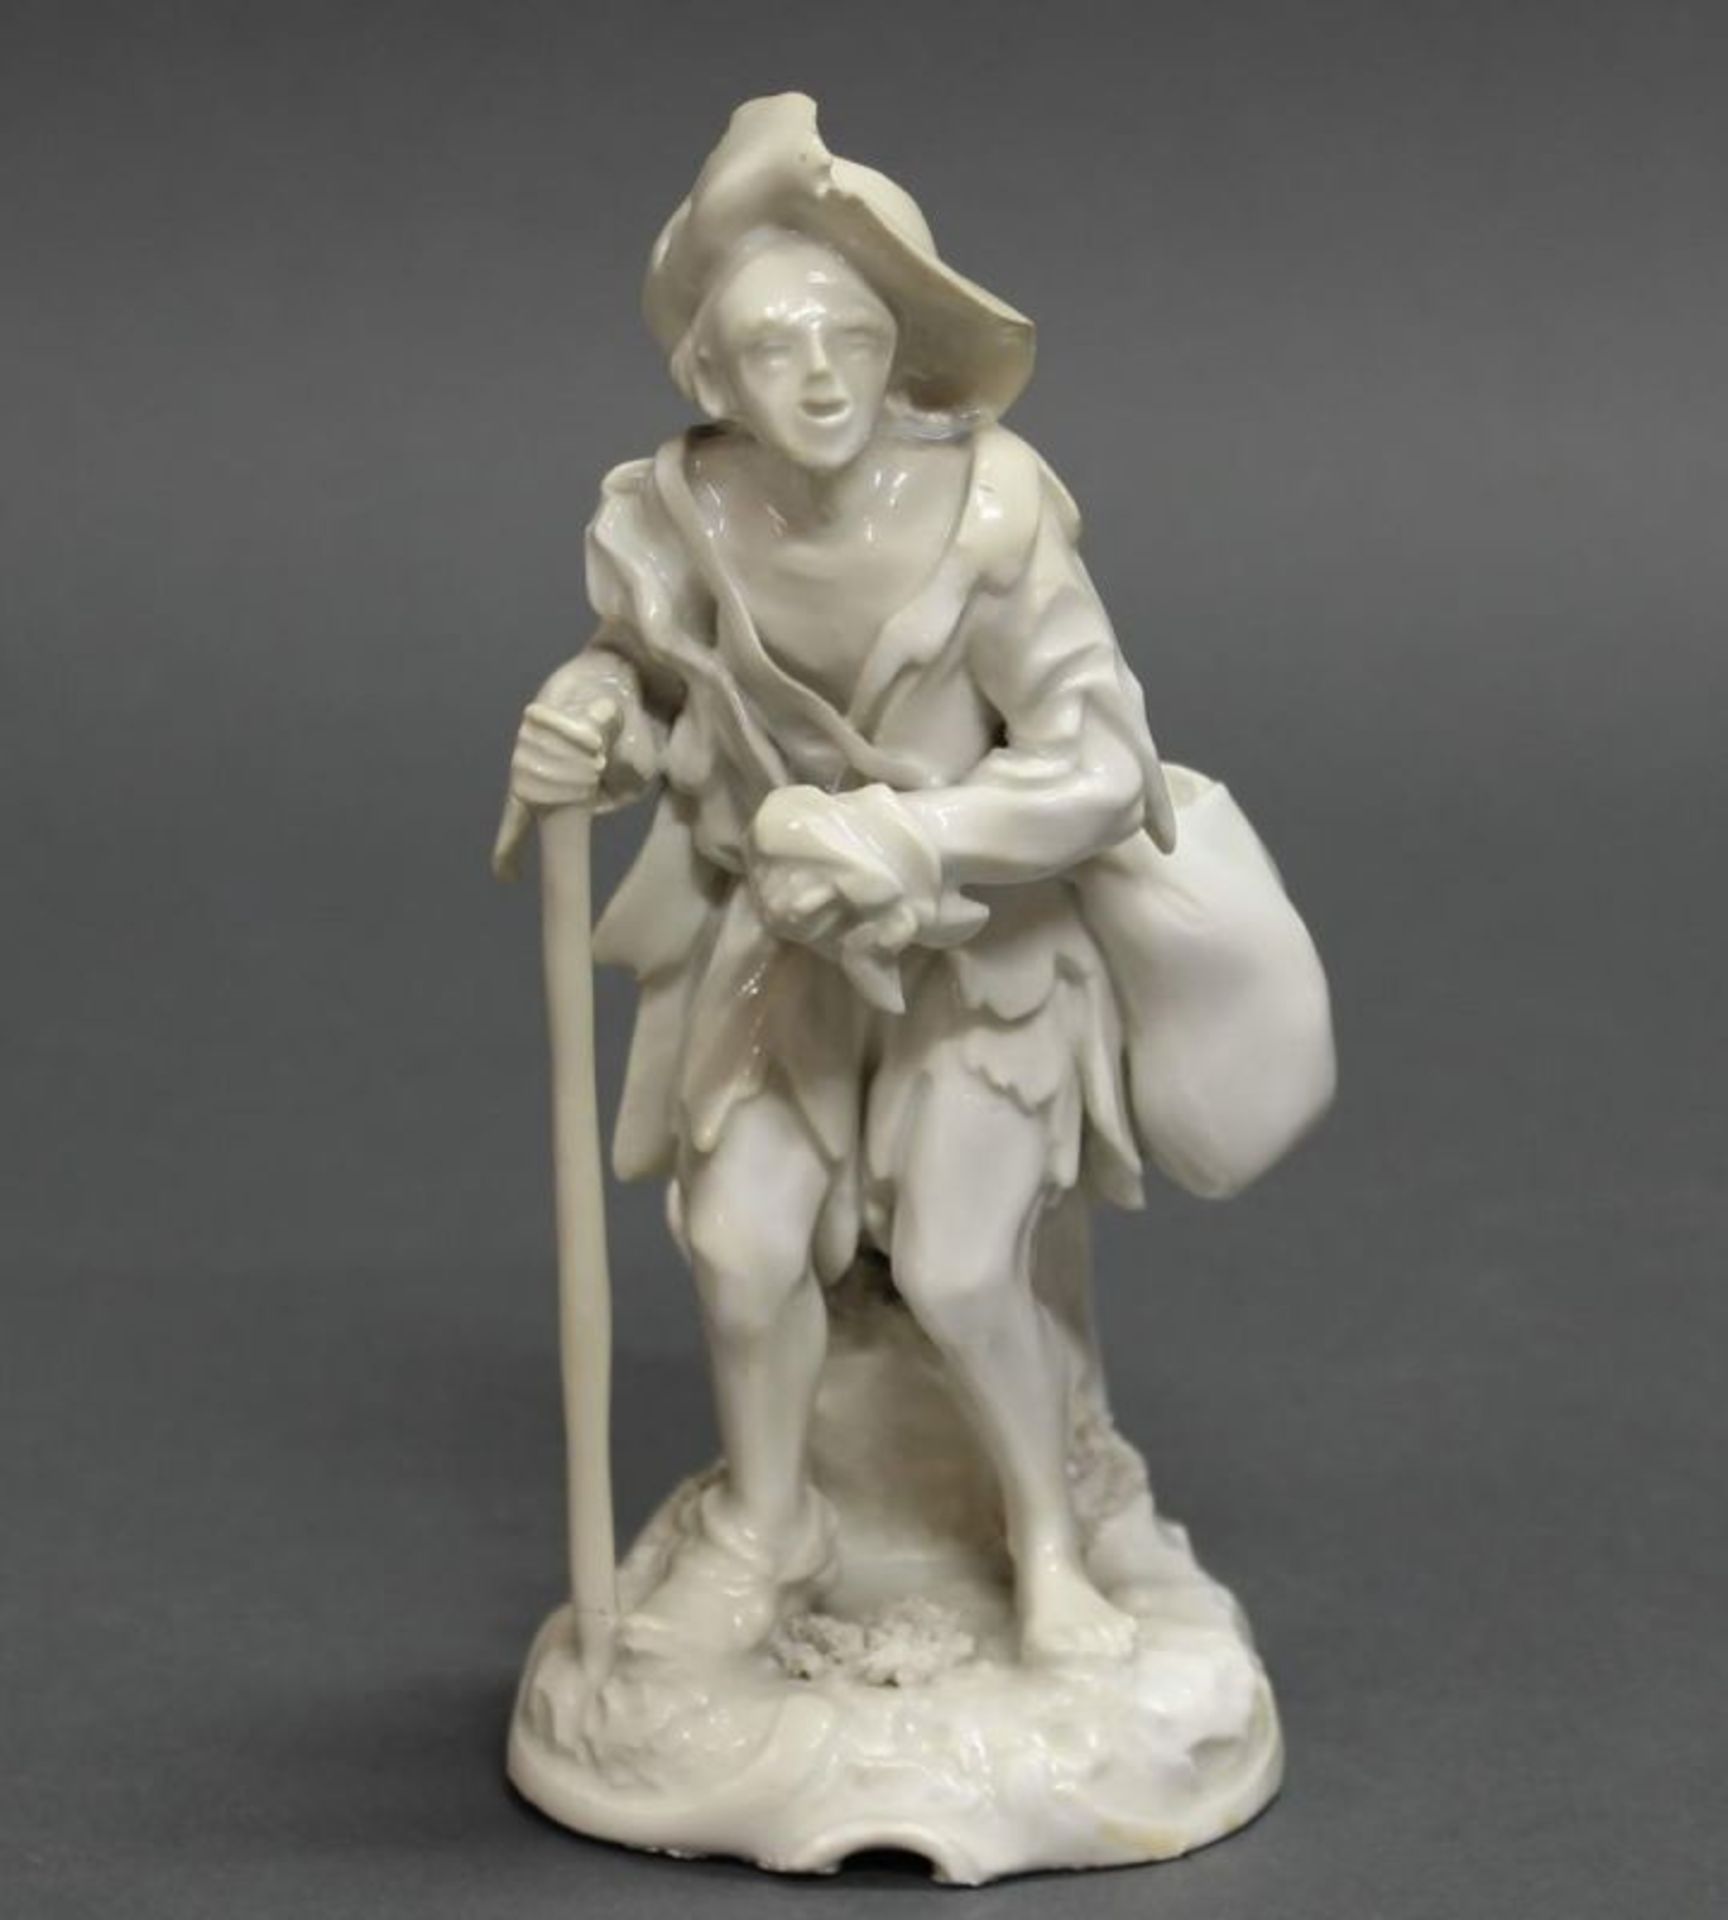 Porzellanfigur, "Bettler", Frankenthal, 1777, Weißporzellan, Modellentwurf wohl von Carl Gottlieb